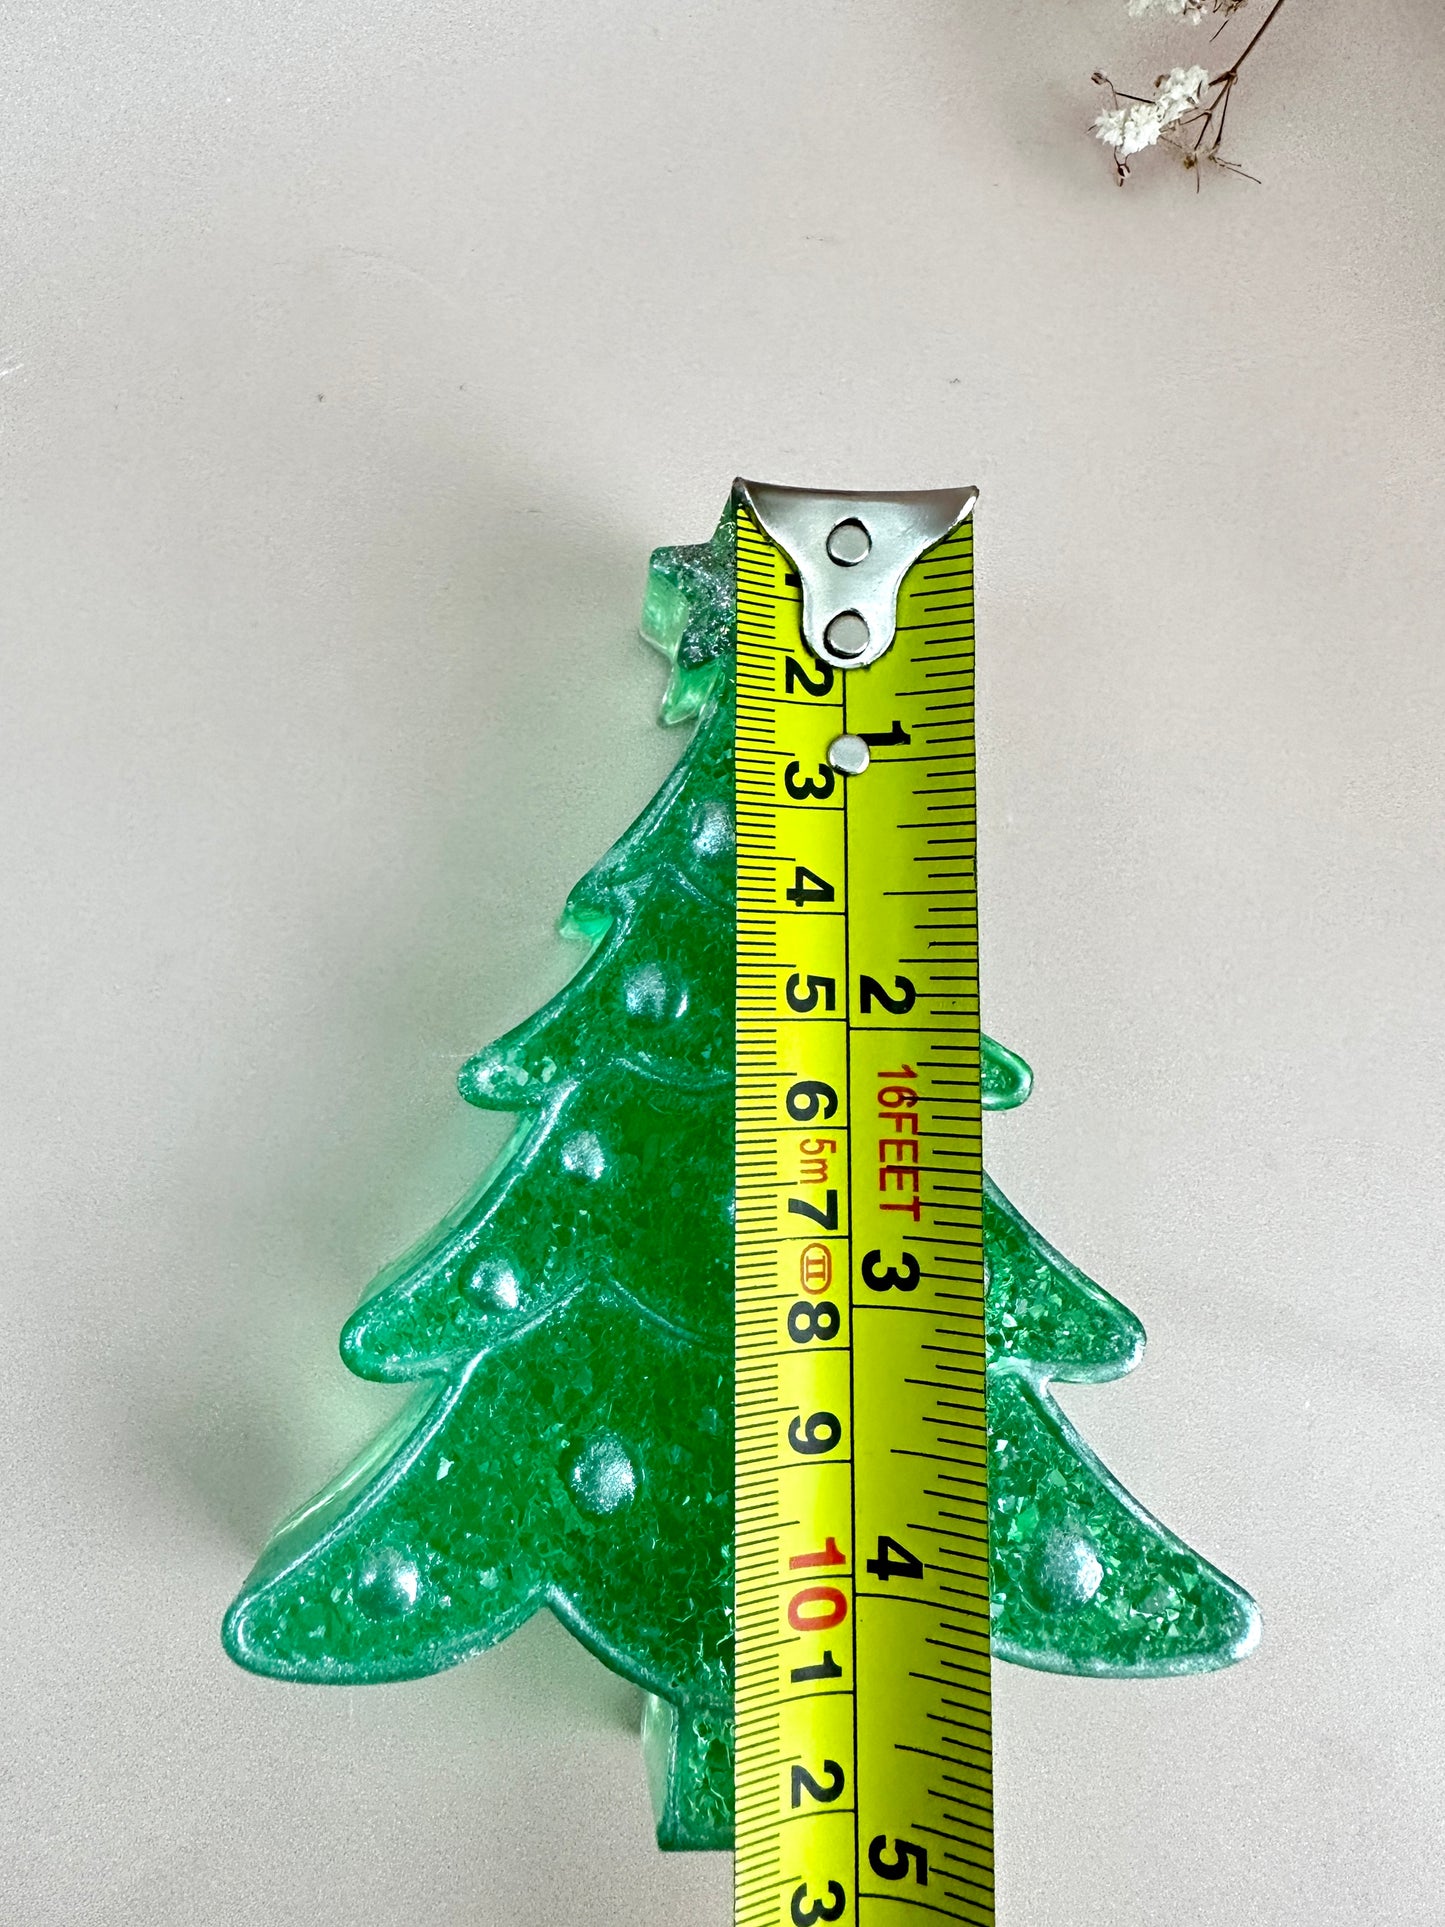 Silikonform – Eleganter Weihnachtsbaum mit Kristallornamenten – Perfekt zum Gestalten von Neujahrsdekorationen – Ideales Weihnachtsgeschenk